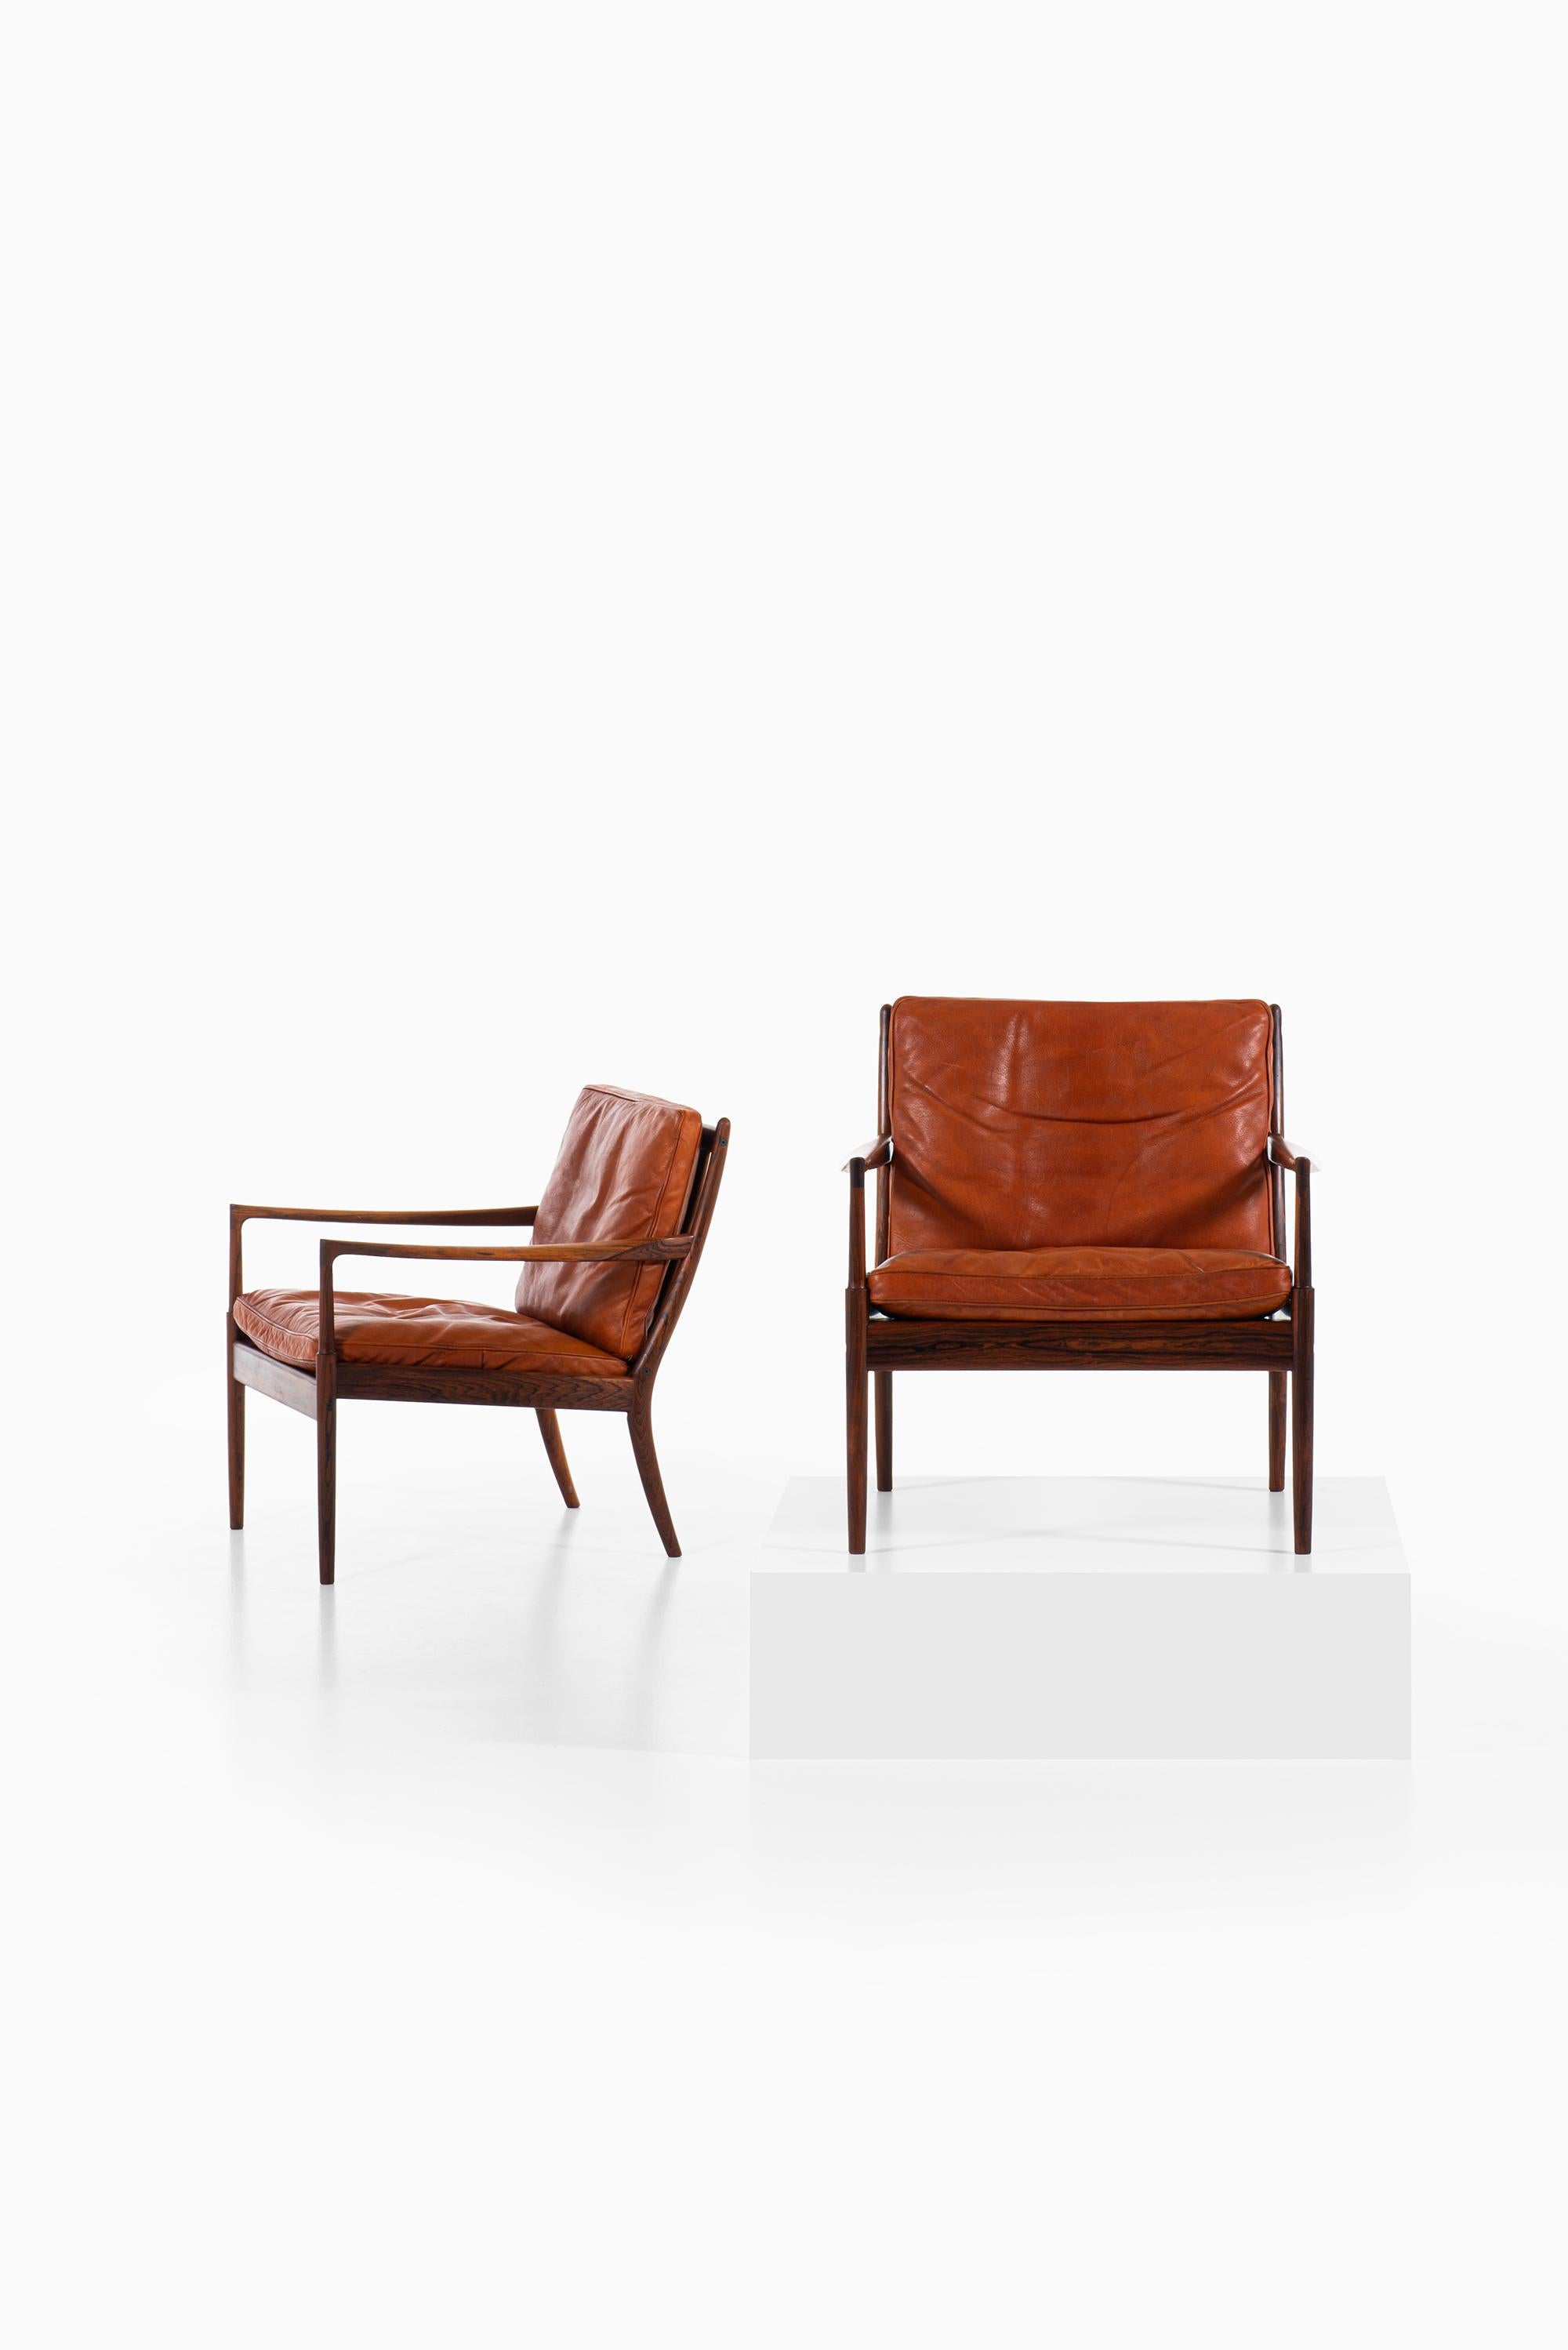 Seltenes Paar Sessel Modell Samsö, entworfen von Ib Kofod-Larsen. Produziert von OPE in Schweden.